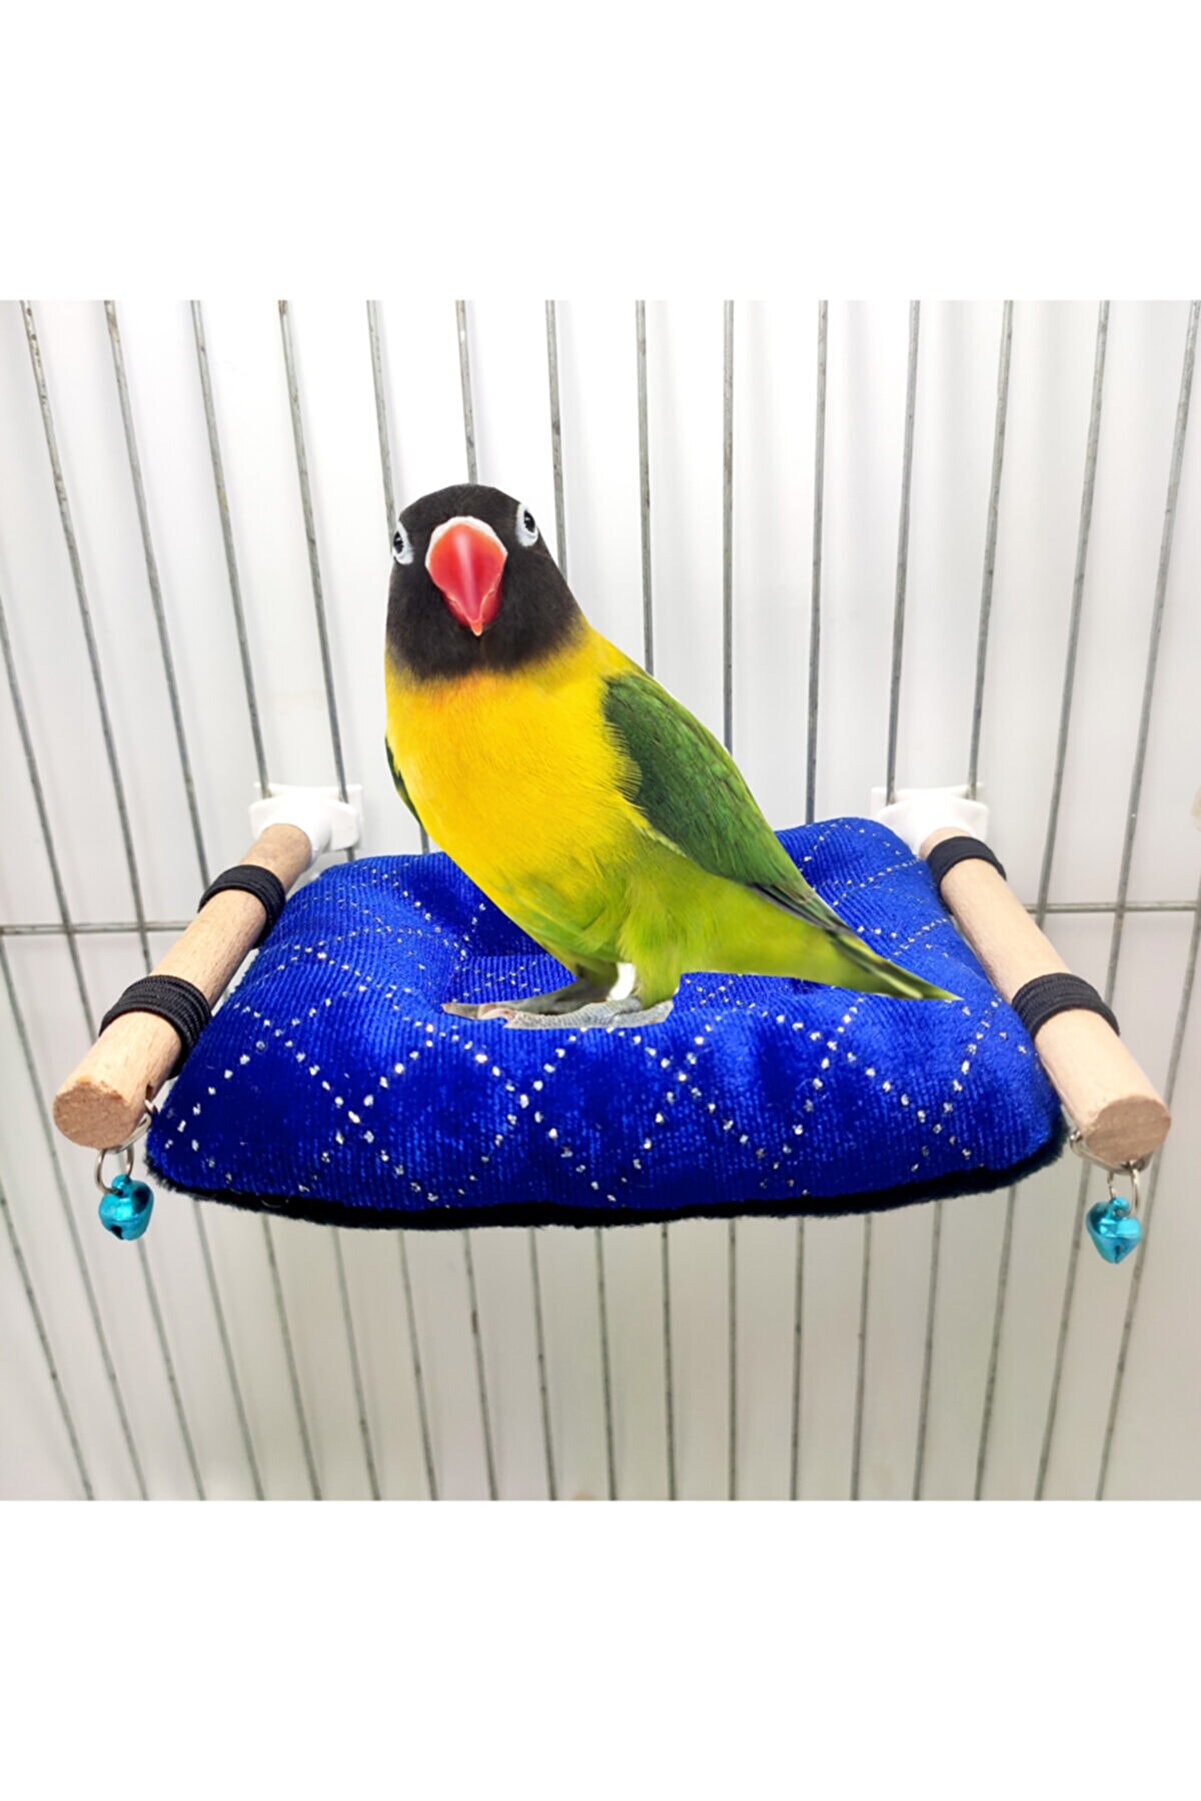 ozzipetshop Sevda Papaganı Için Özel Kuş Yastığı Tünekli Model + Süpriz Hediye